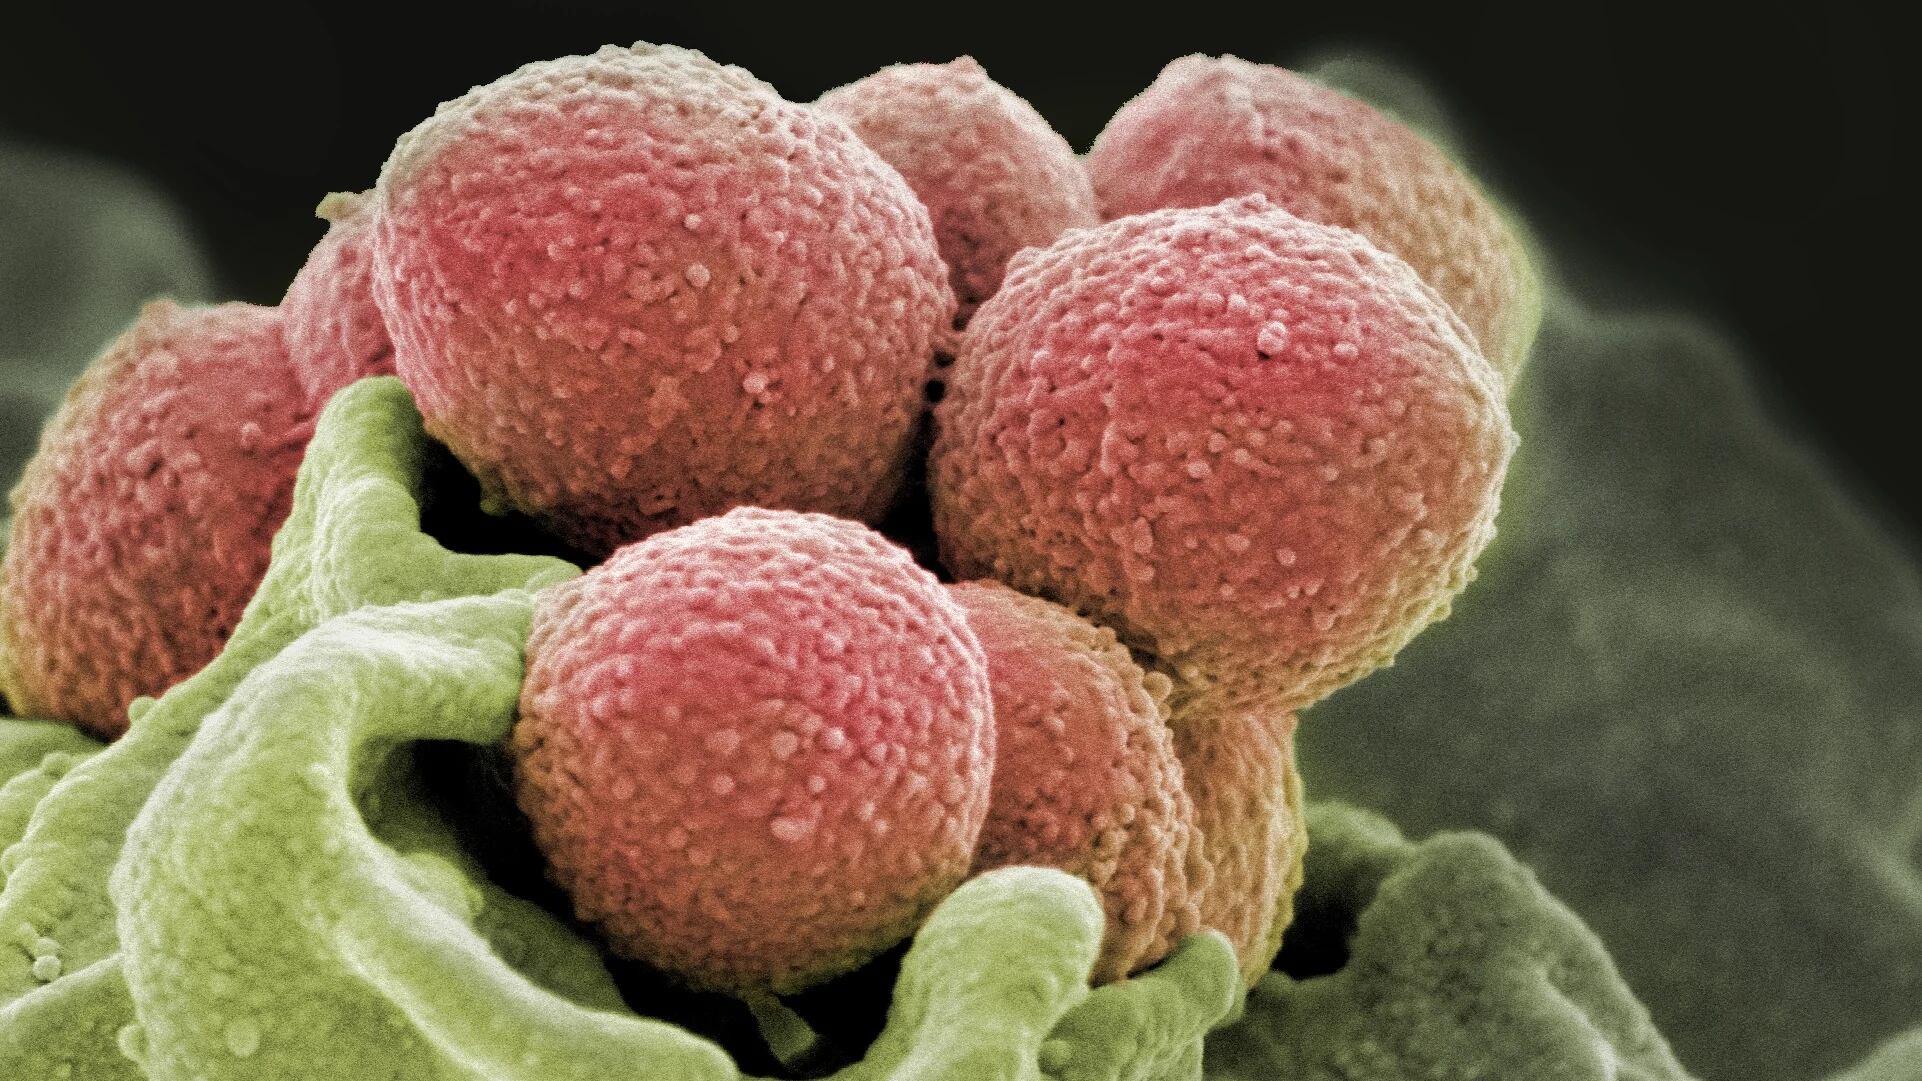 En algunos pacientes se pueden presentar infecciones más graves provocadas por la bacteria Streptococcus pyogenes. Son cepas con toxinas que causan infecciones invasivas/

NIH National Institute of Allergy and Infectious Diseases (NIAID)